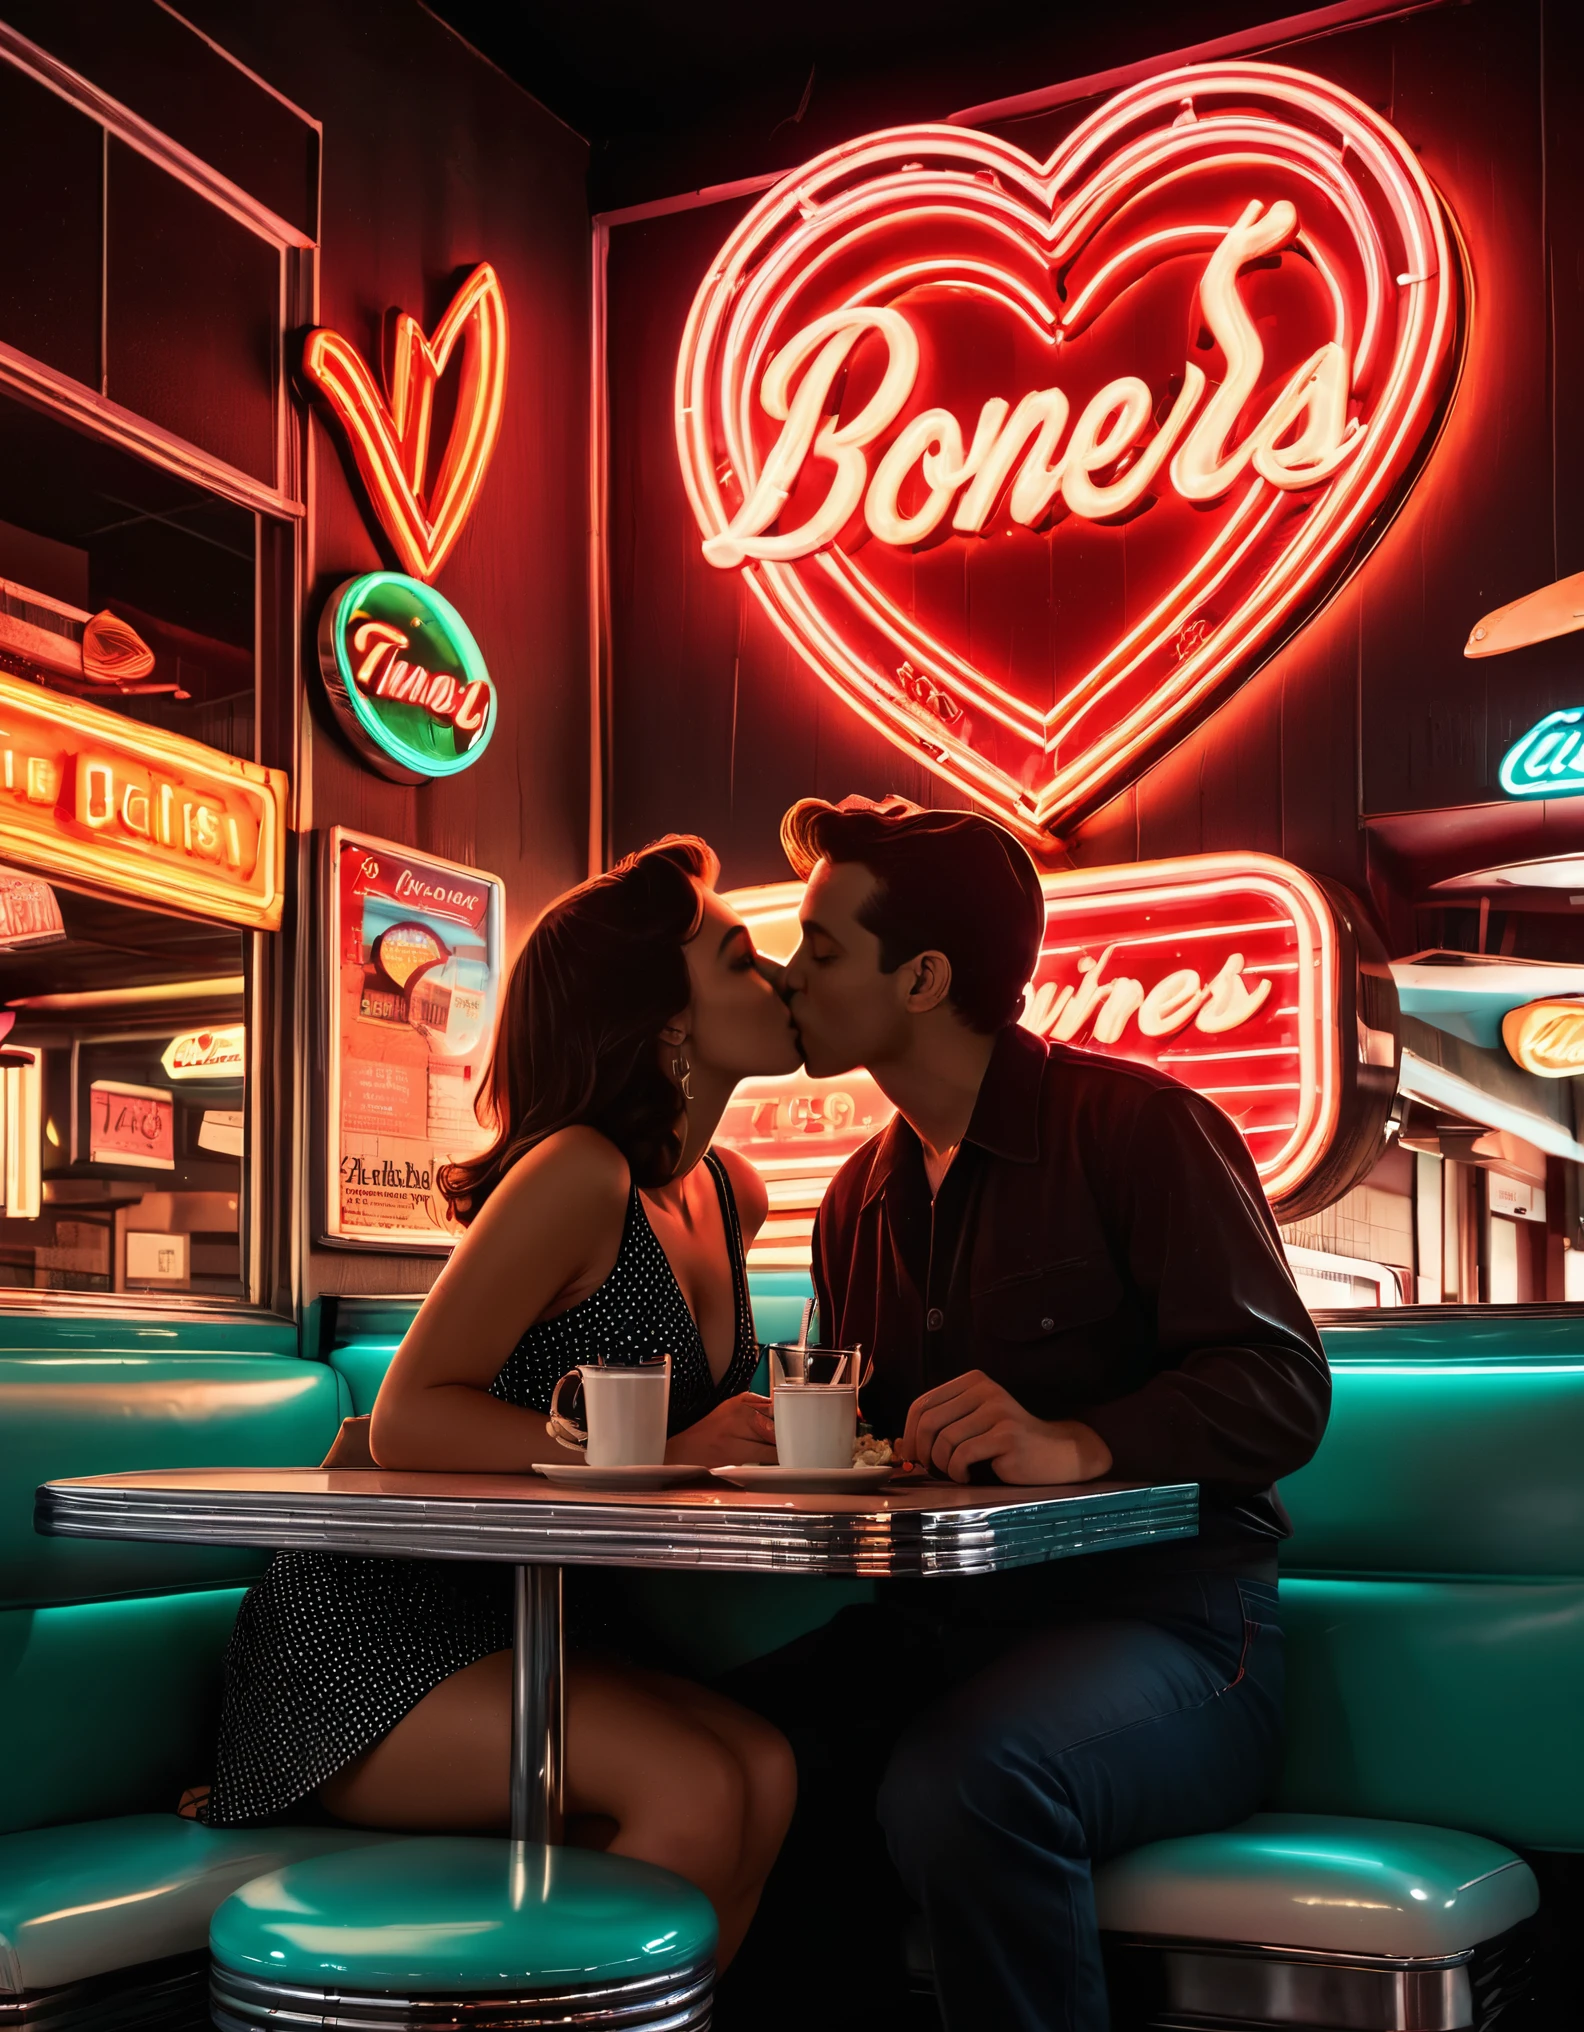 复古霓虹灯艺术作品，描绘了一对情侣在餐厅接吻的剪影, 背景中有霓虹灯和心形图案, 唤起 20 世纪 50 年代的怀旧氛围